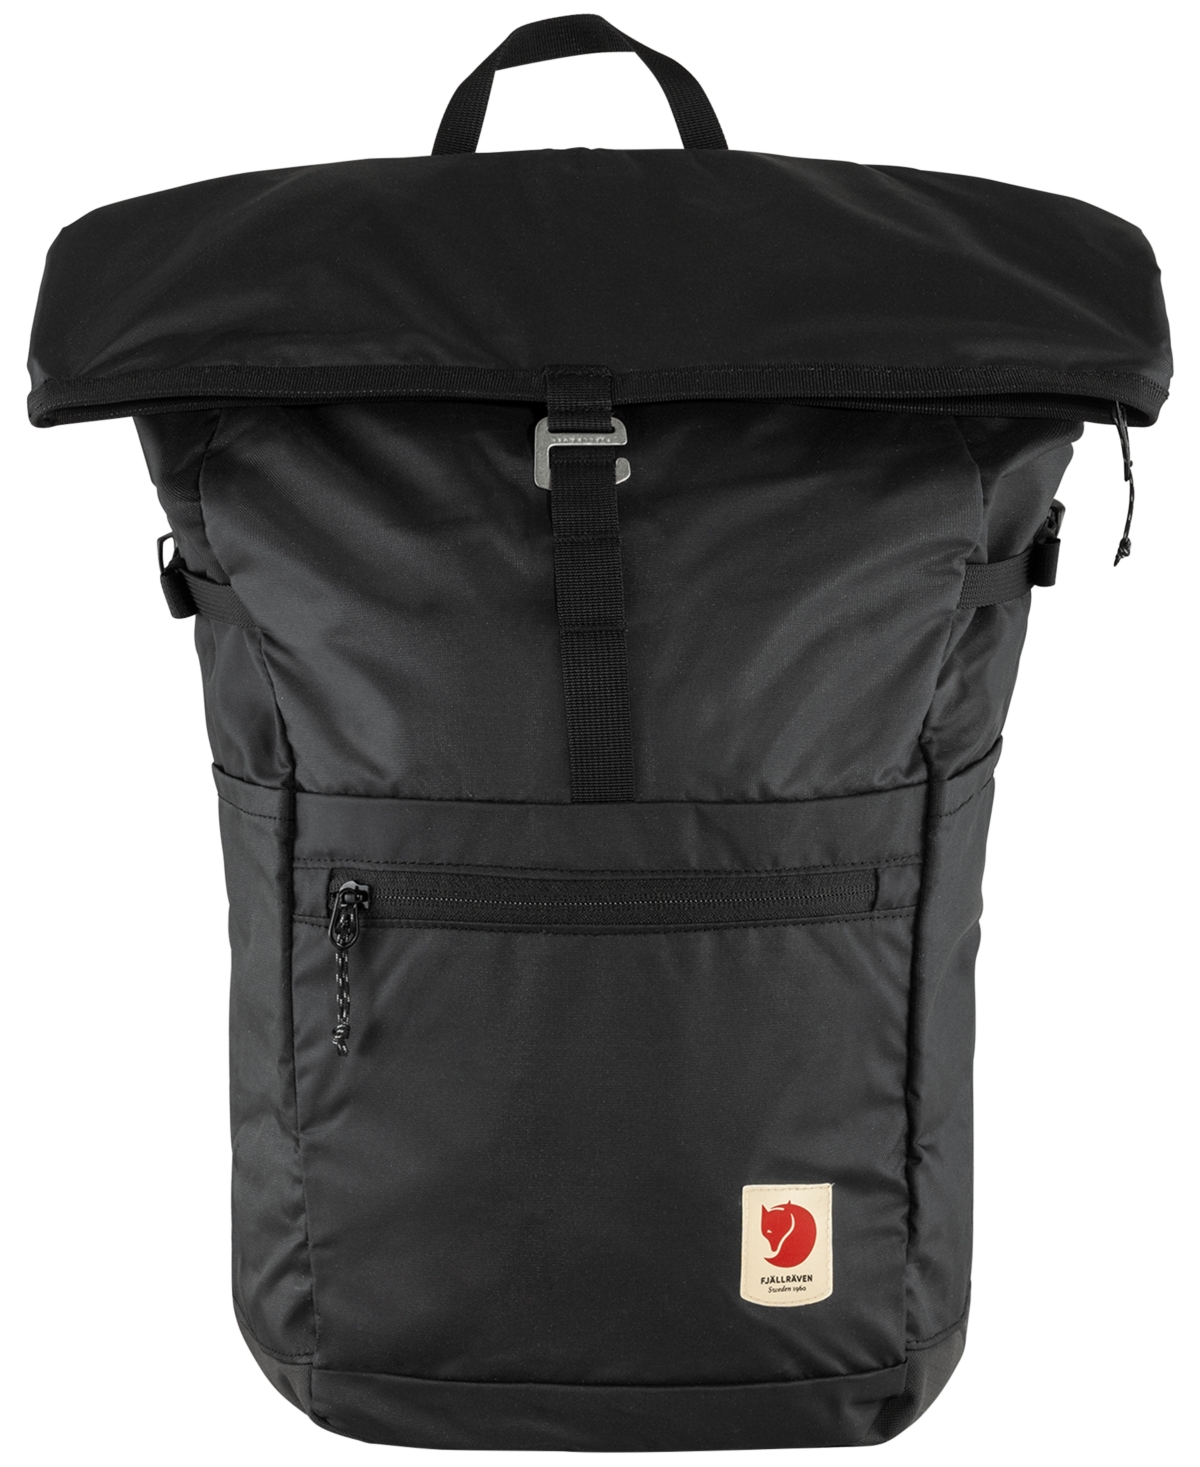 Men's High Coast Foldsack Backpack - Black